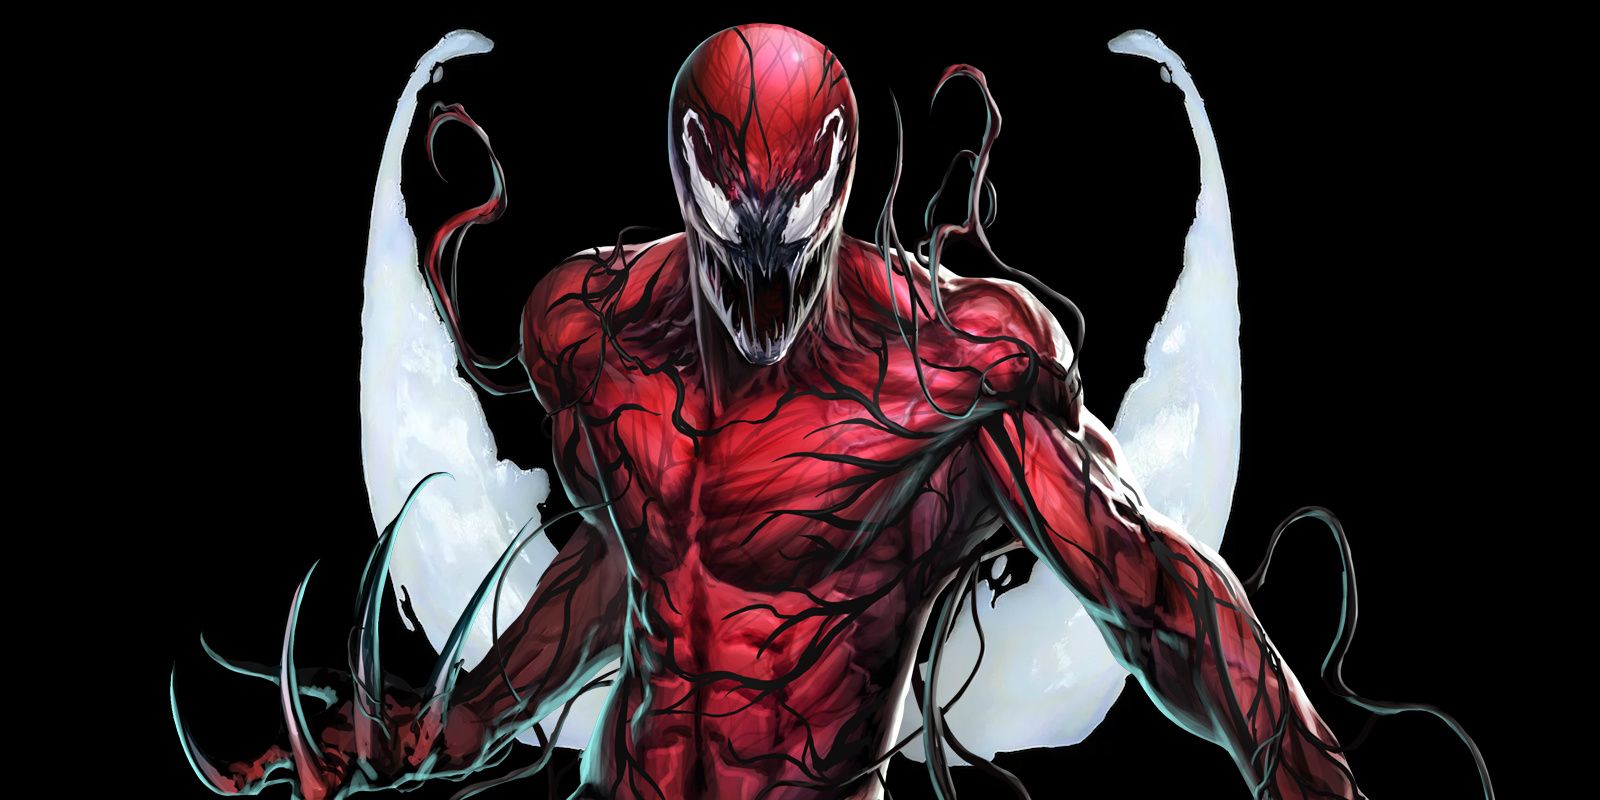 “Estoy evolucionando”: Carnage está superando oficialmente a Venom como el principal simbionte de Marvel, eliminando su última debilidad